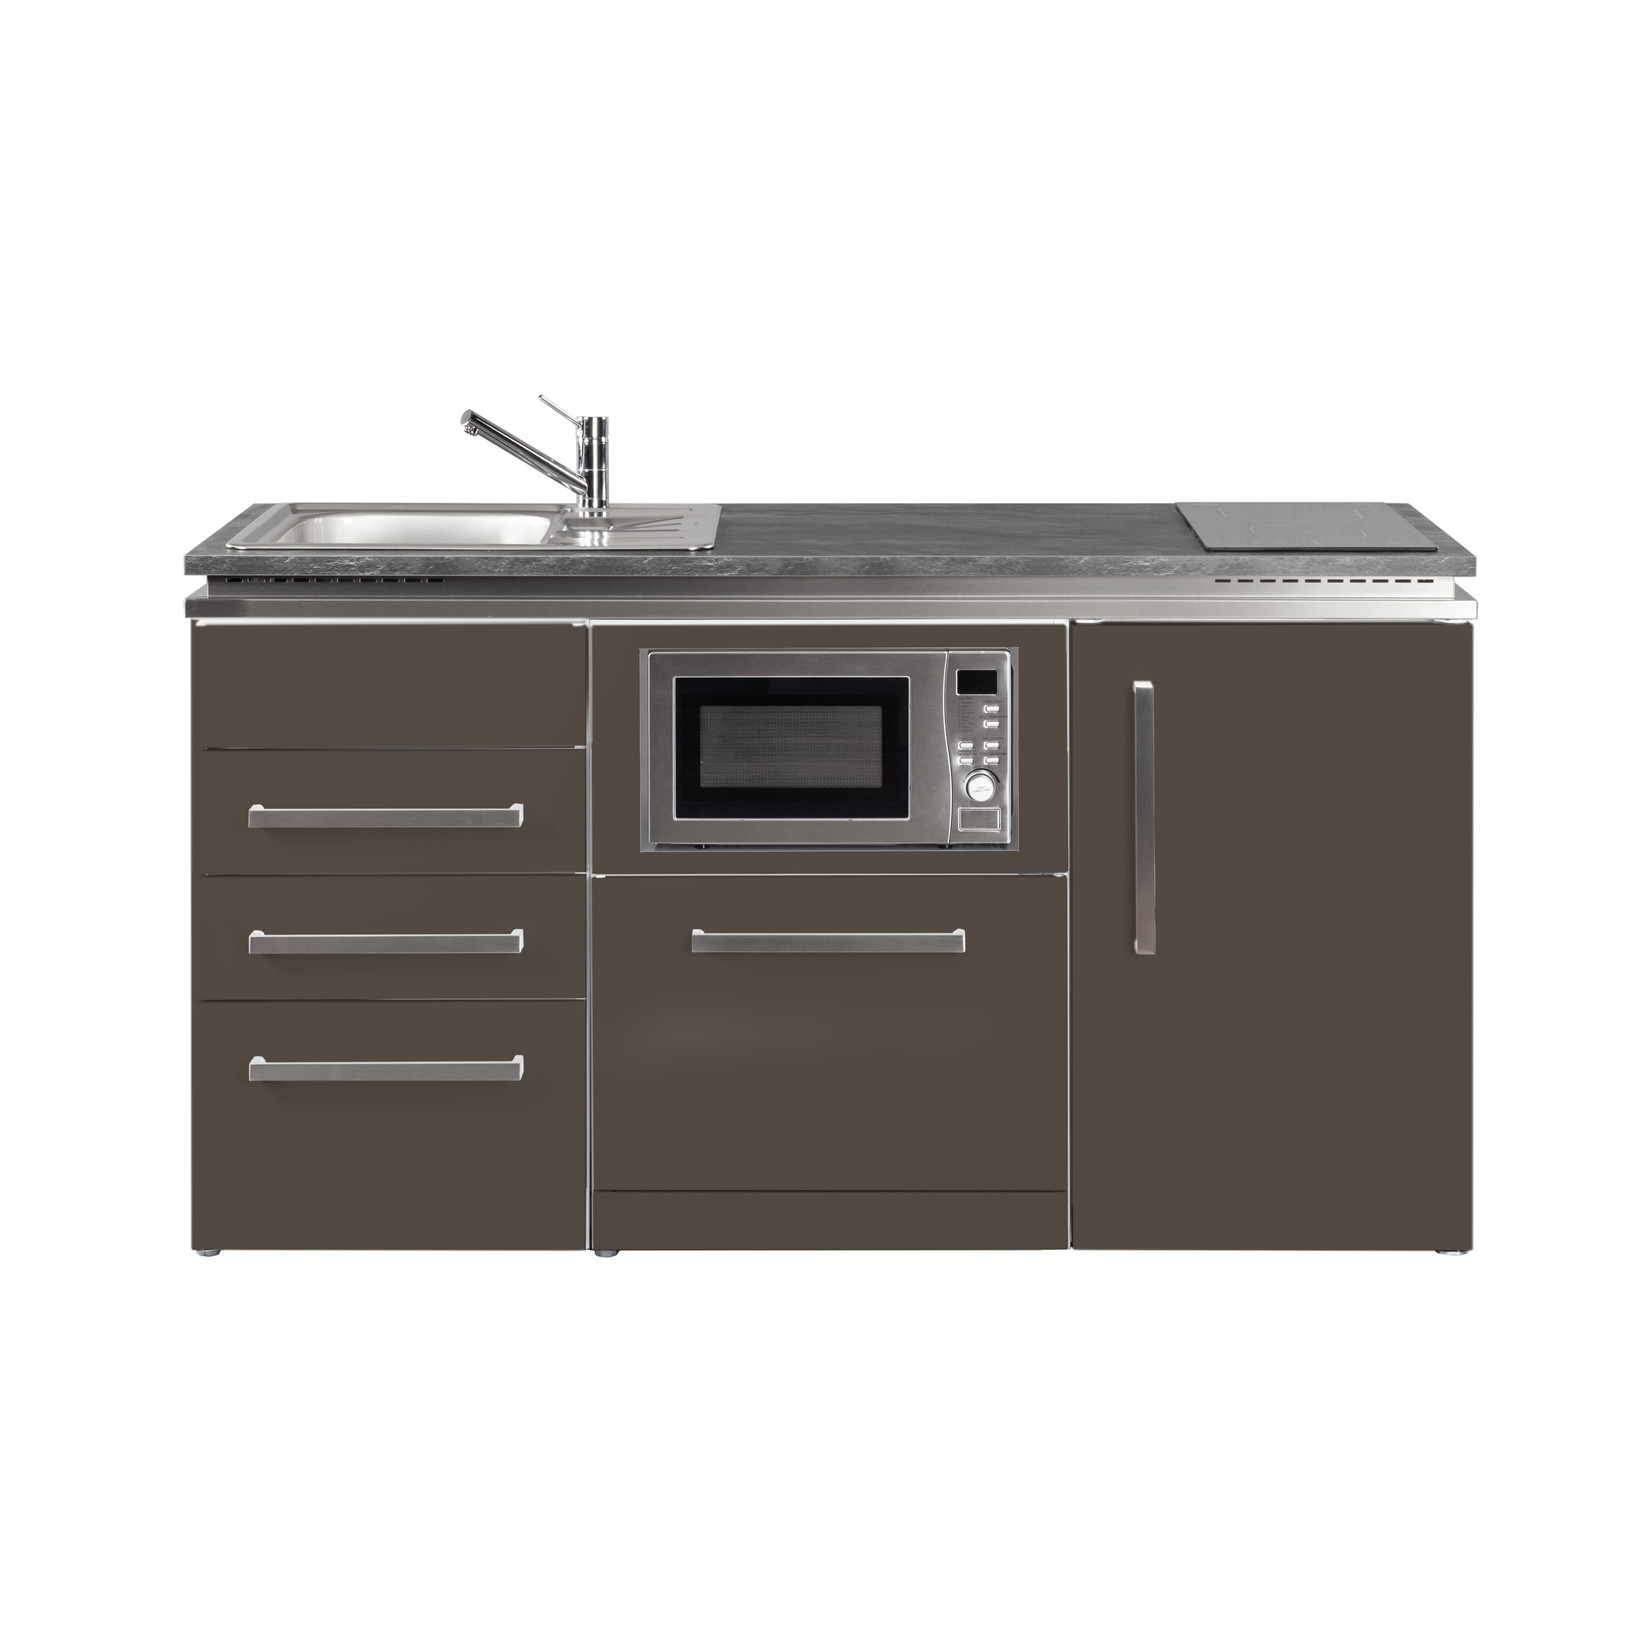 Kitchenette SLGSMS3160 met koelkast, vaatwasser, magnetron en 3 softclose lades